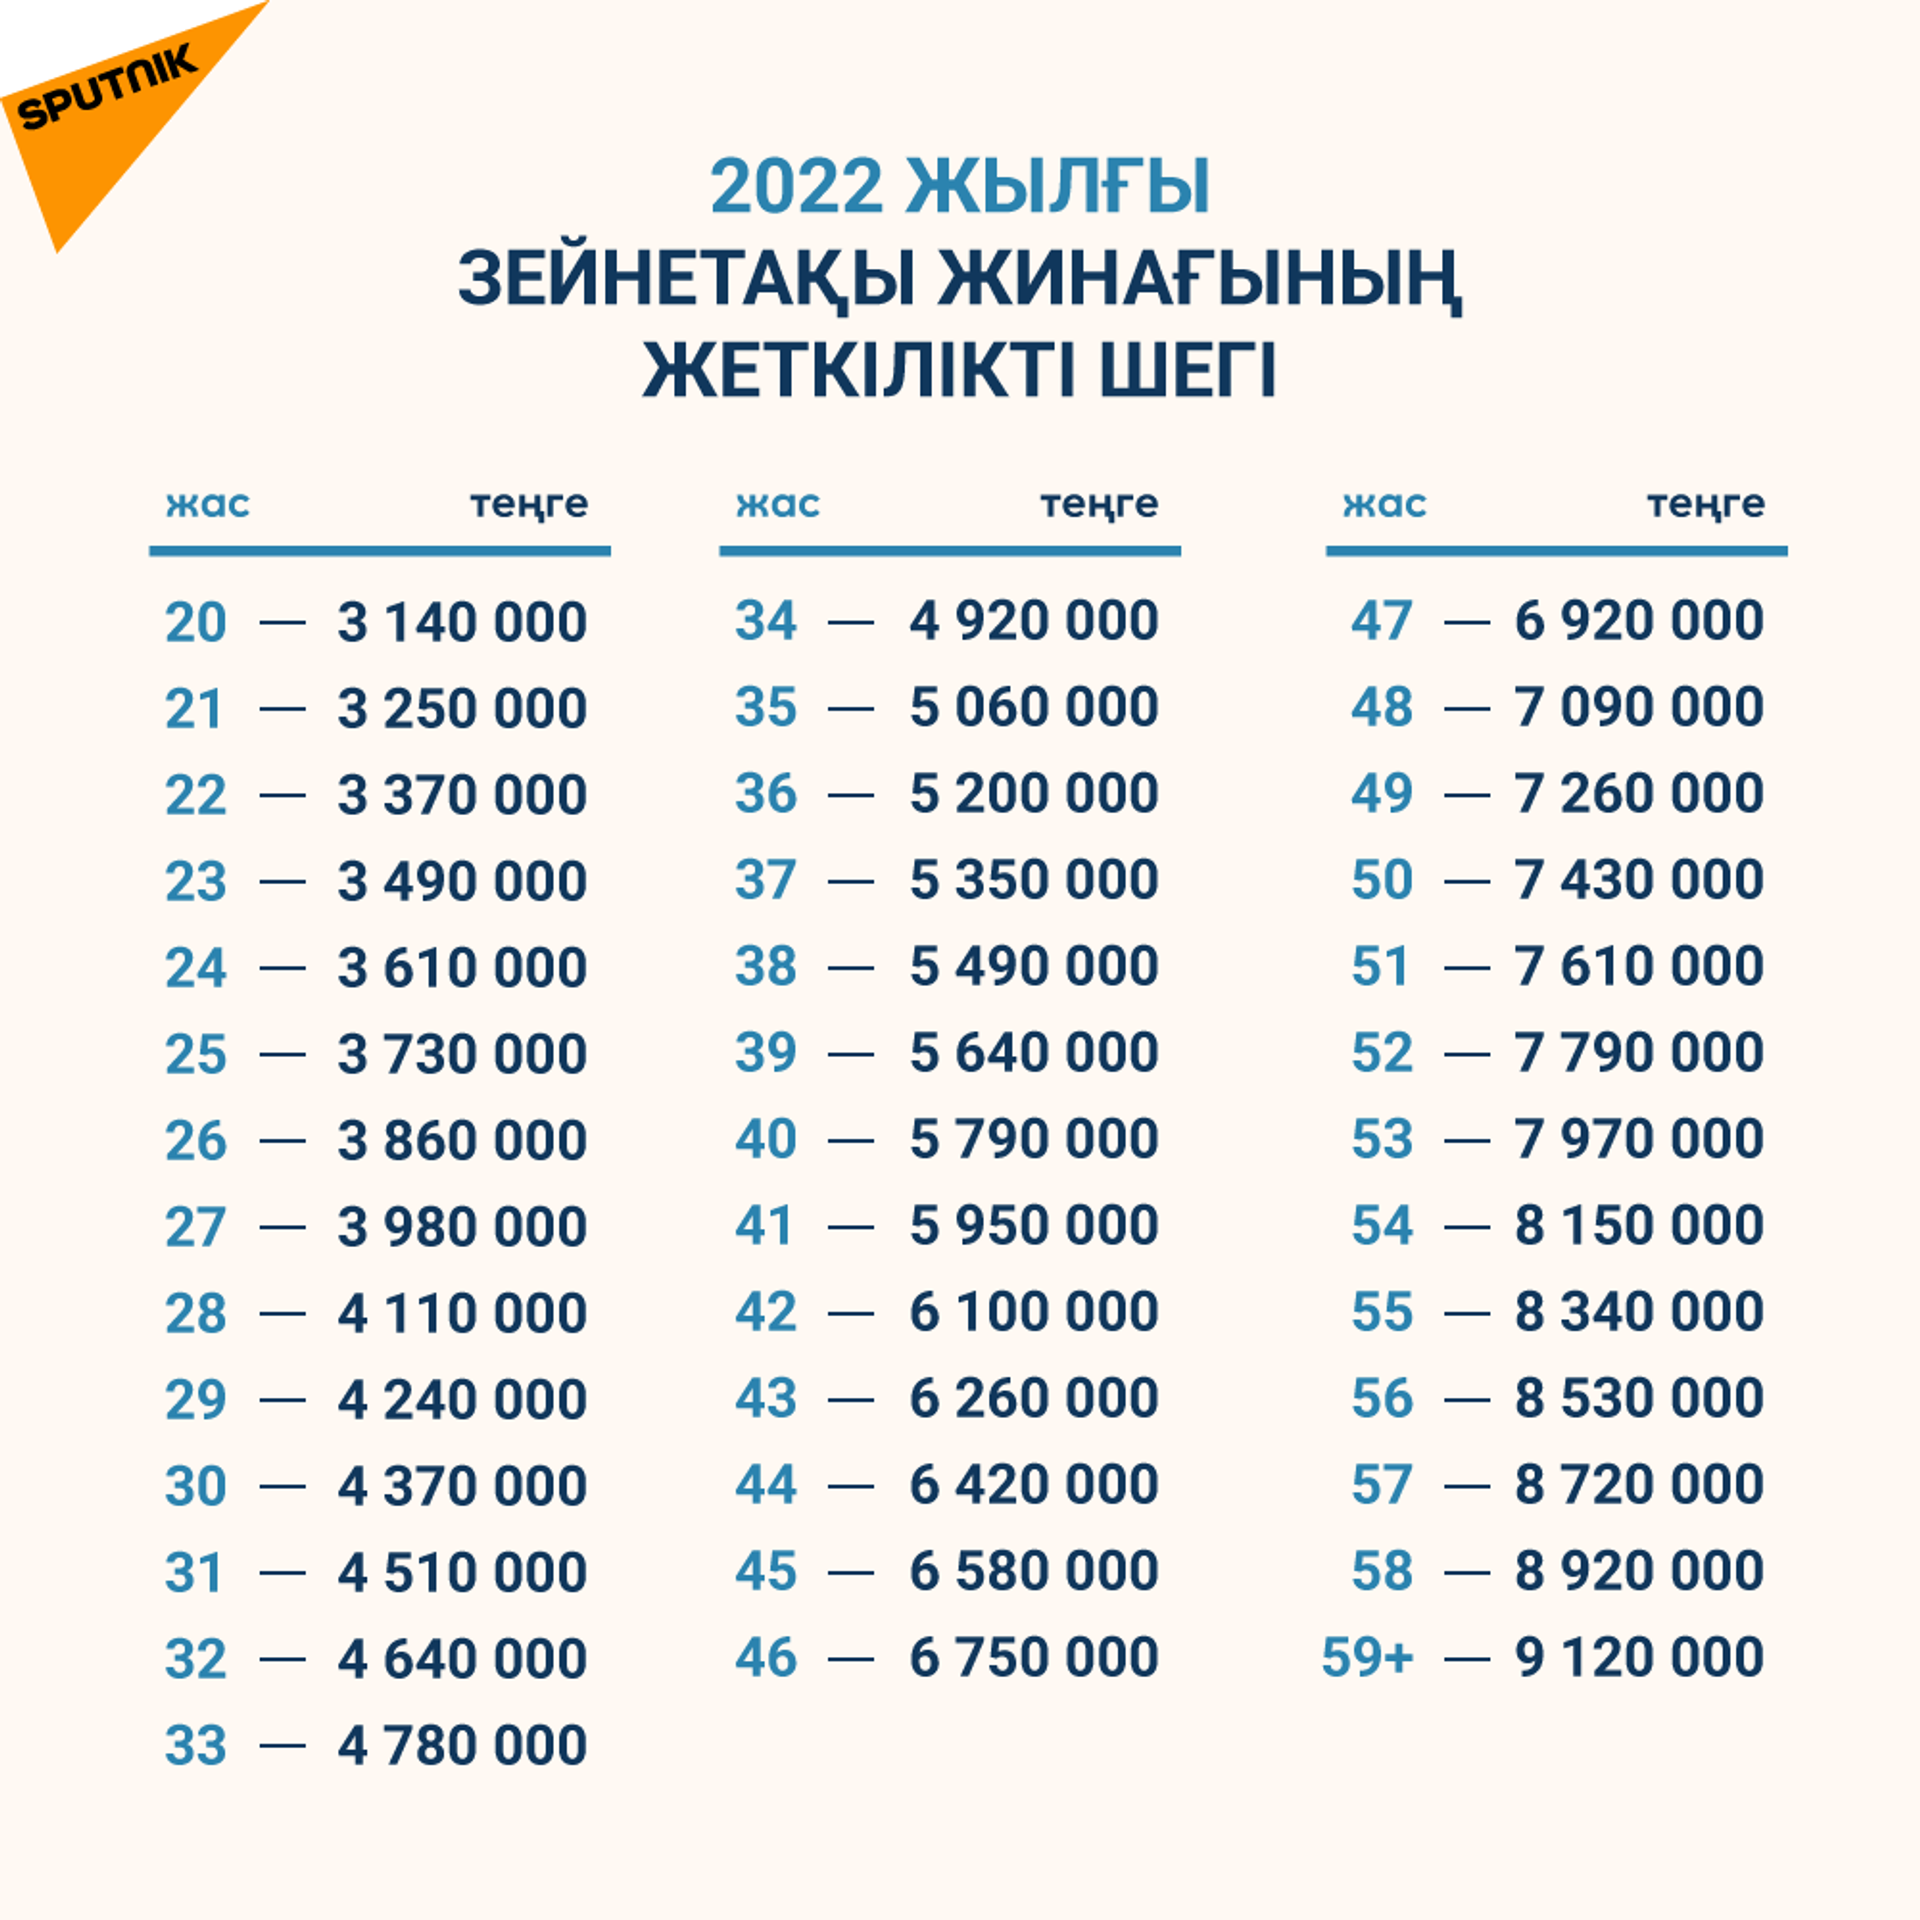 2022 жылғы зейнетақы жинағының жеткілікті шегі - Sputnik Қазақстан, 1920, 01.02.2022